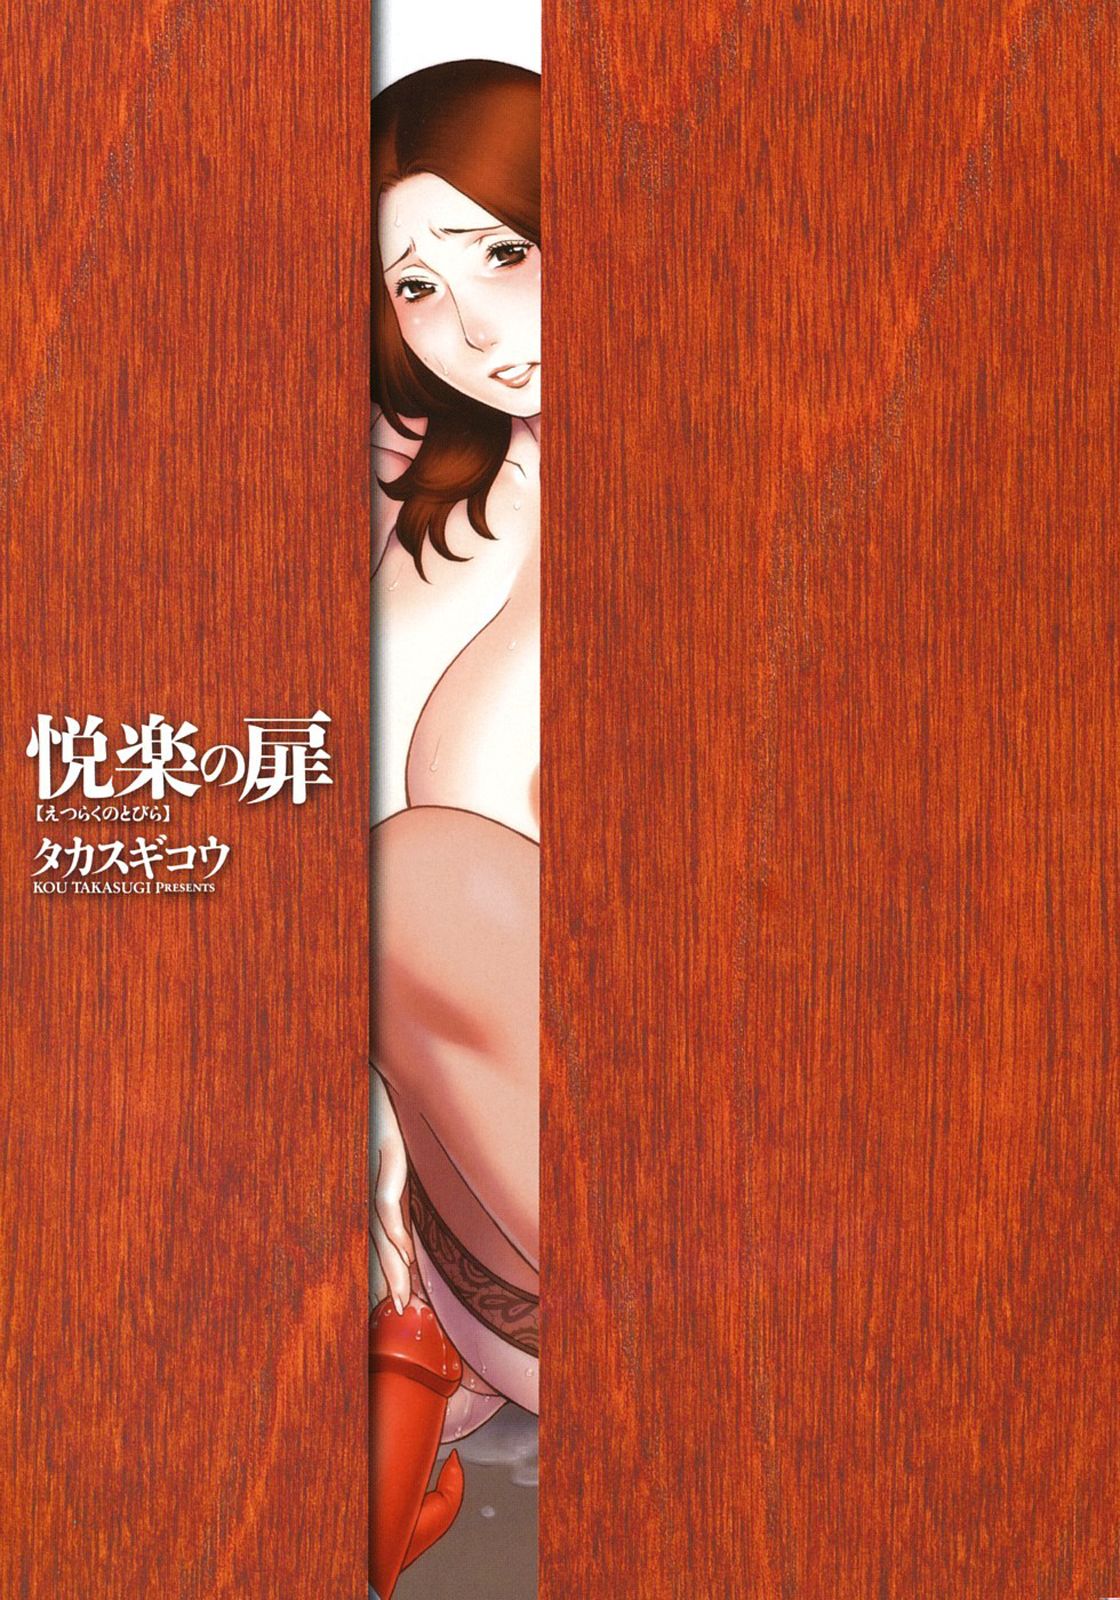 Etsuraku no Tobira - The Door of Sexual Pleasure numero d'image 3